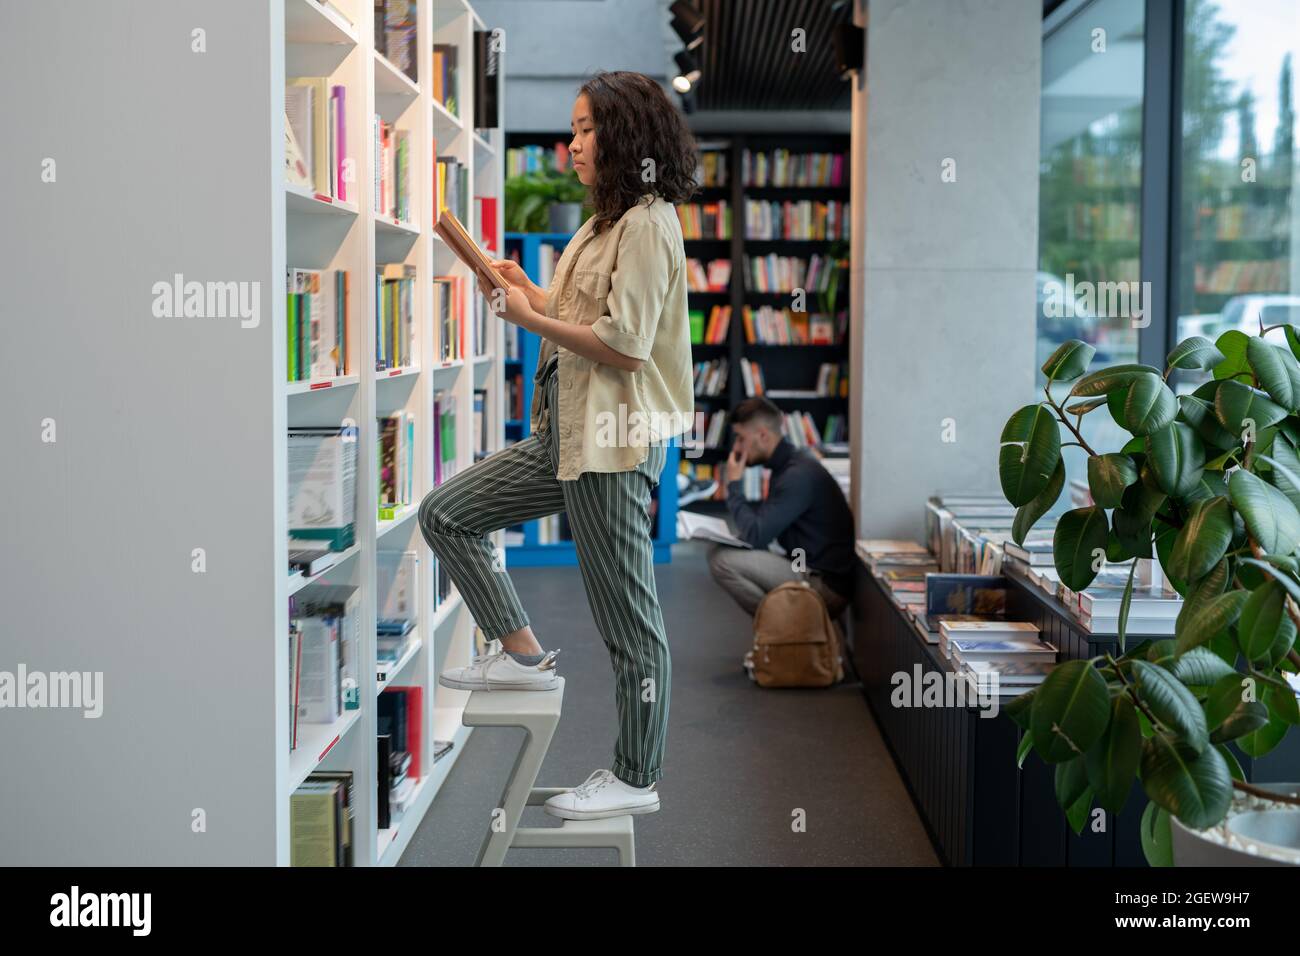 Hübsche asiatische Frau, die auf einer Stehleiter steht, während sie Bücher in der Bibliothek auswählt Stockfoto